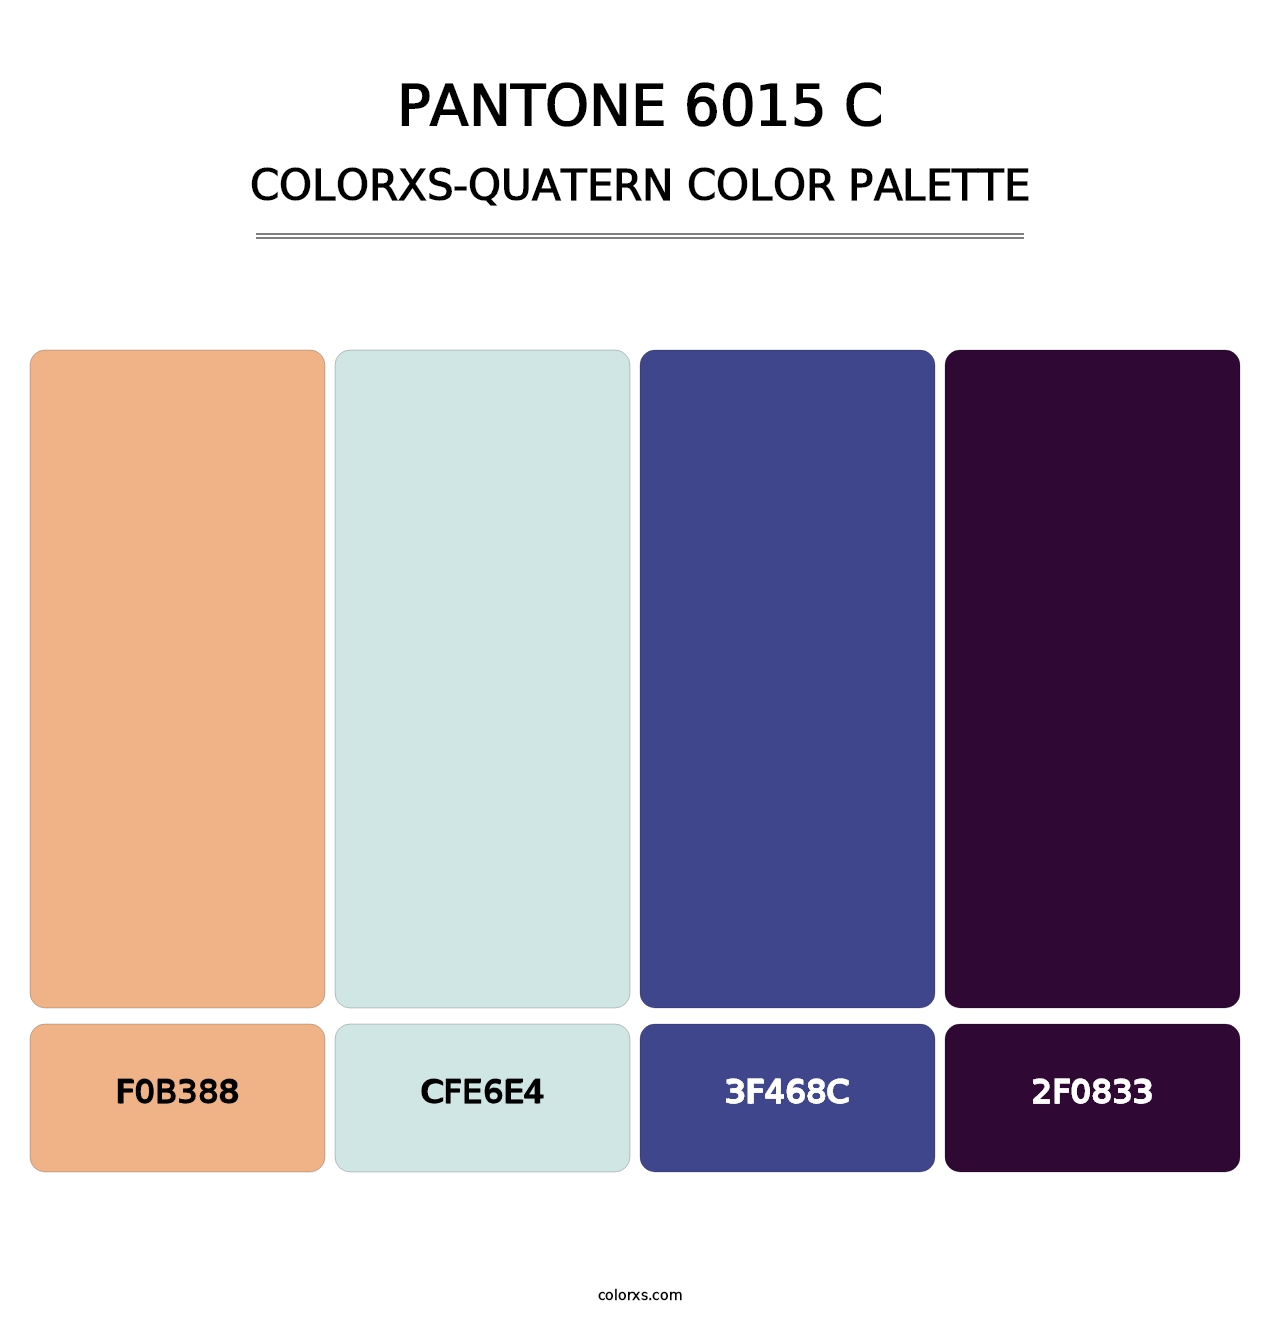 PANTONE 6015 C - Colorxs Quatern Palette